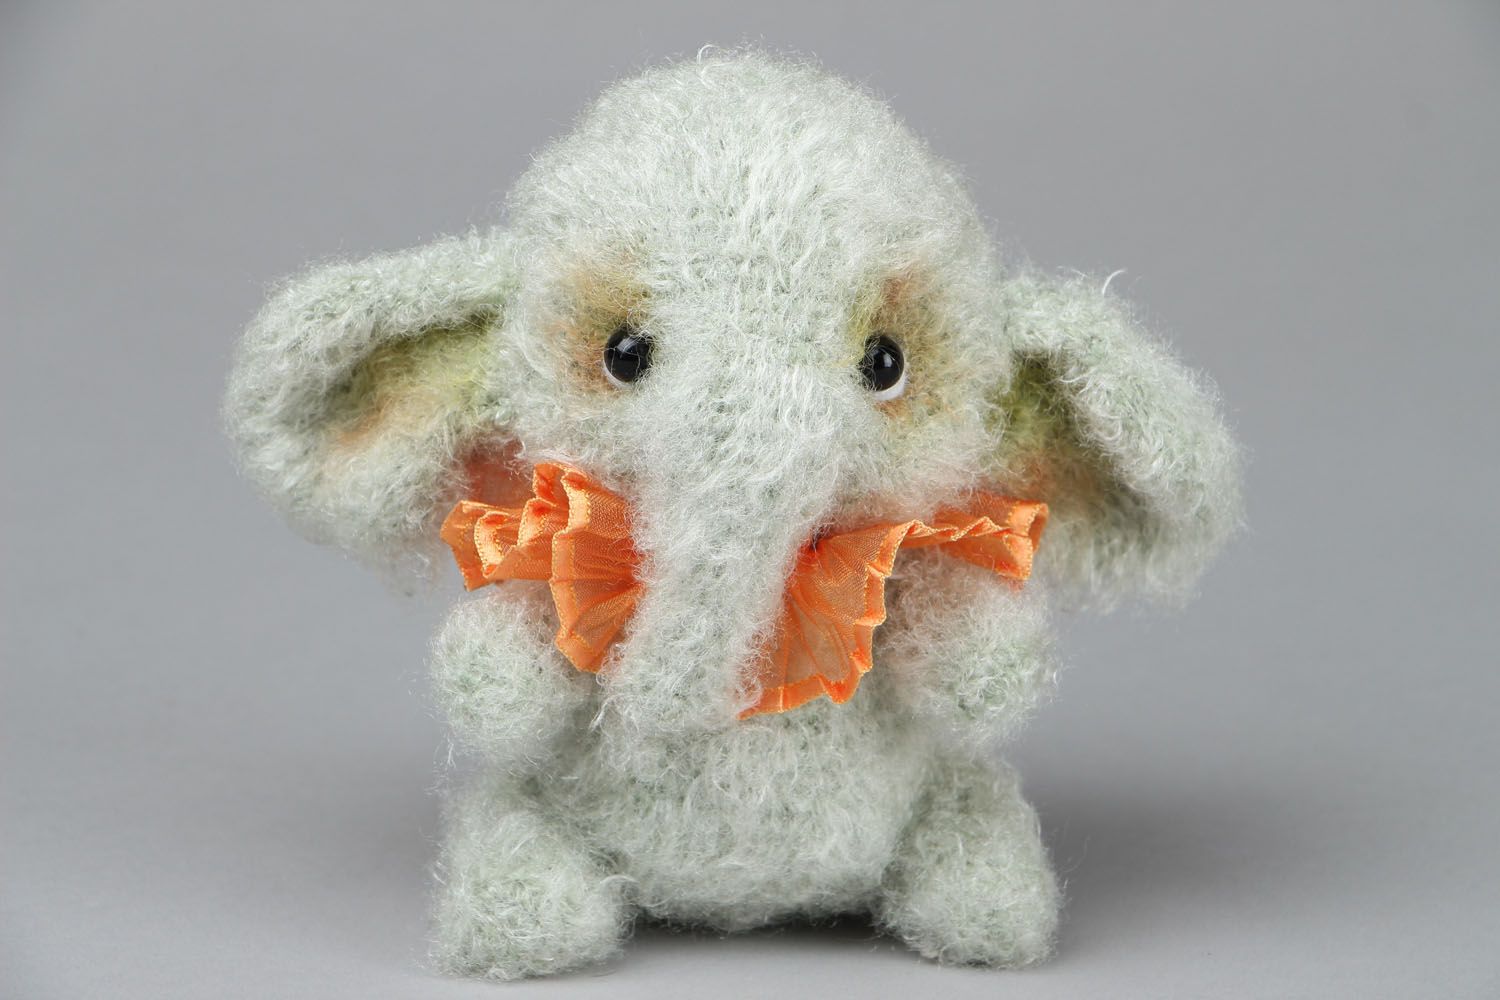 Crocheted toy Elephant photo 1